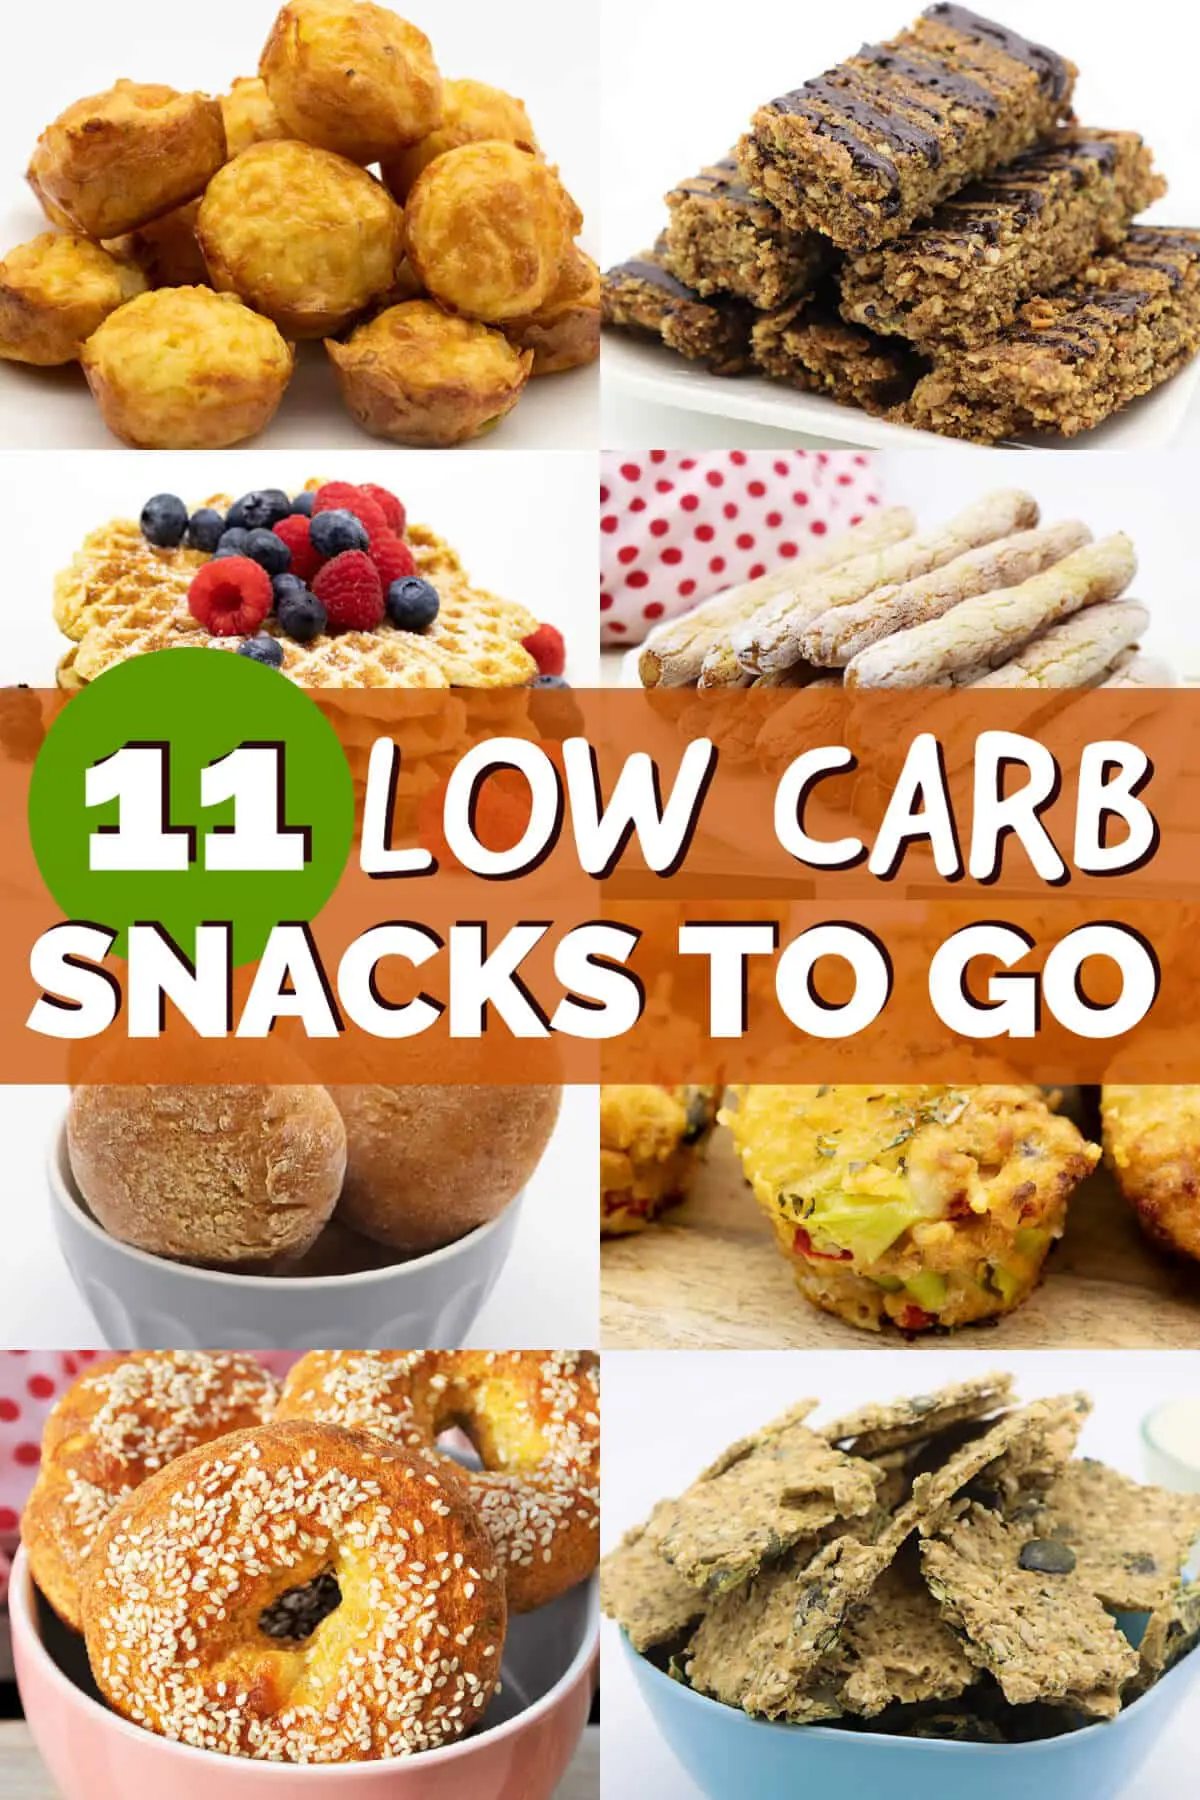 Low Carb Snacks to Go - Gesunde Rezeptideen zum Mitnehmen